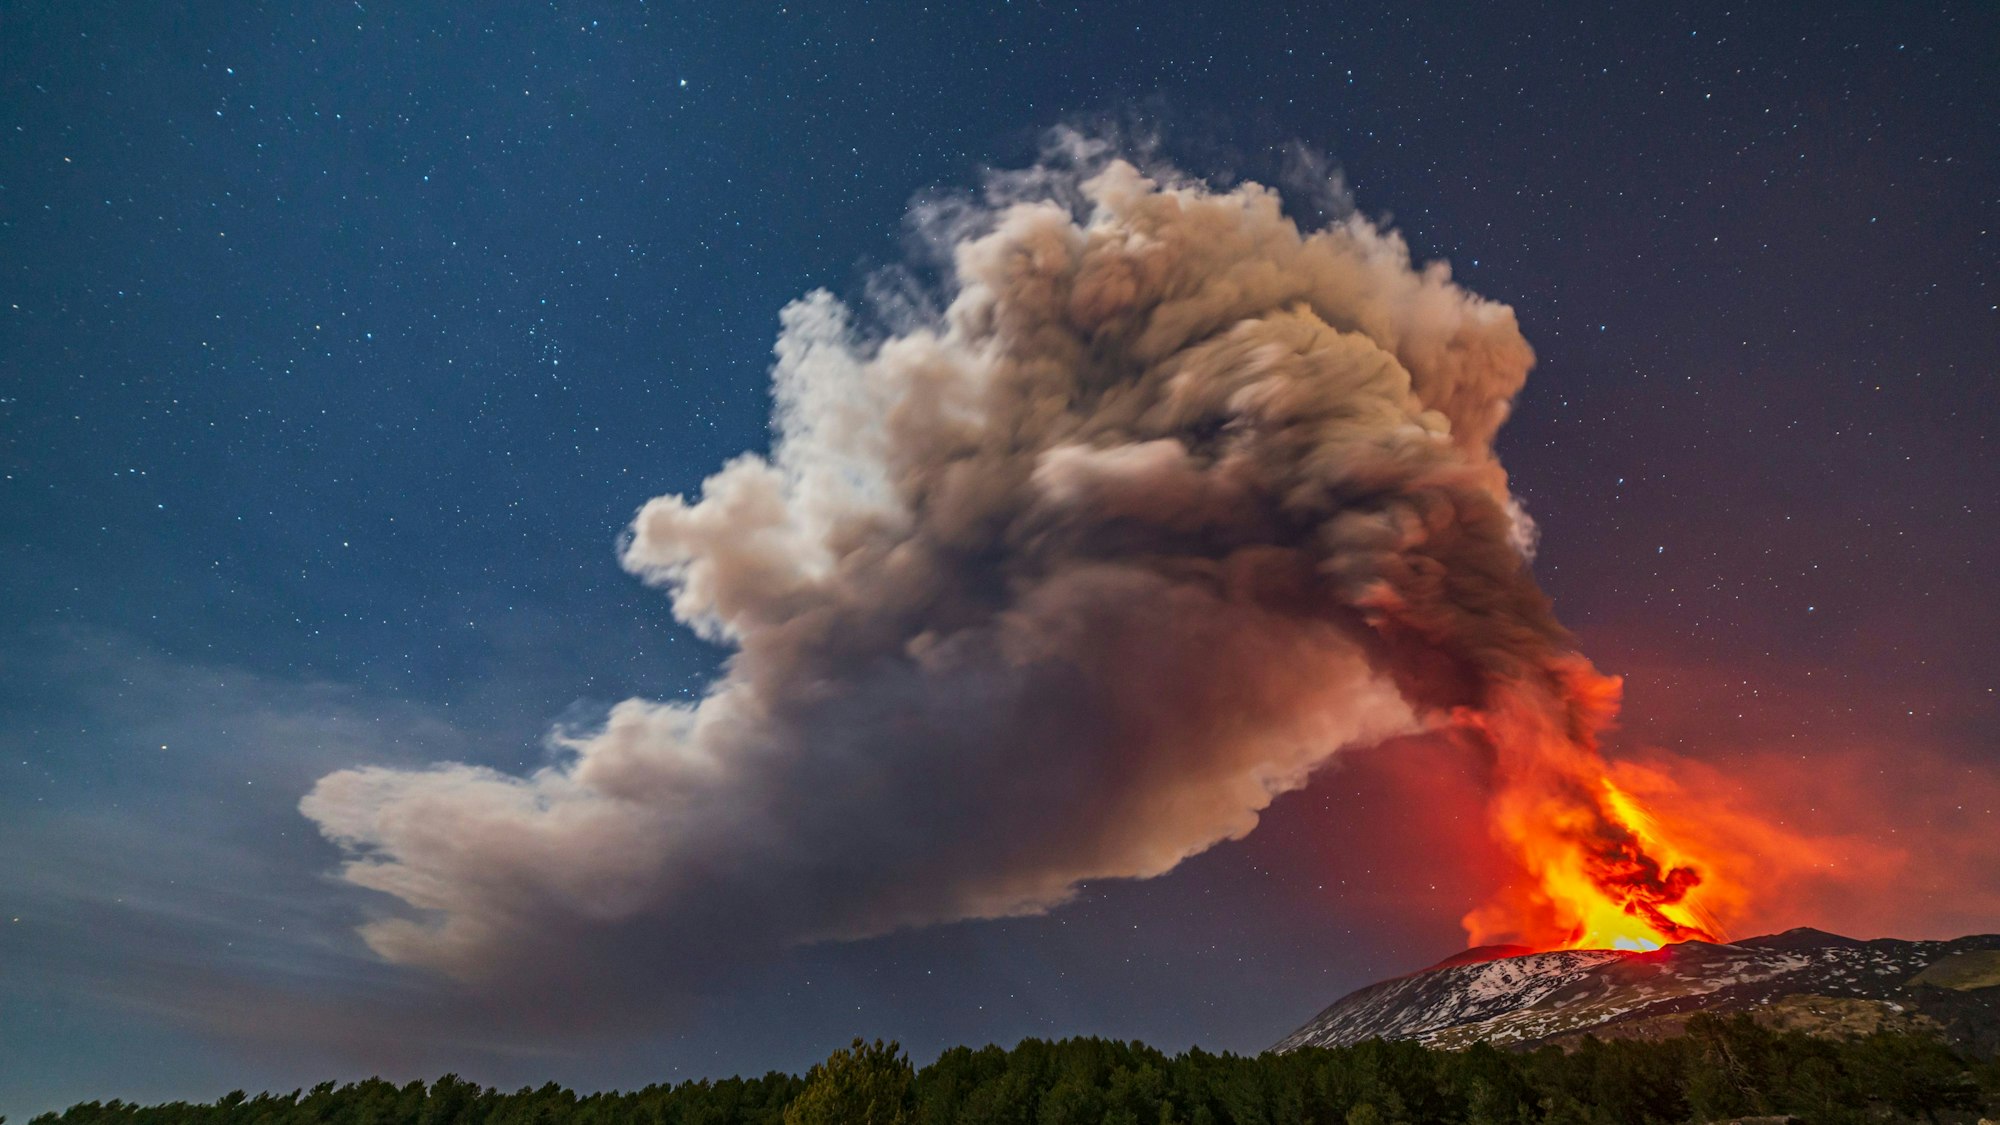 Der Vulkan Ätna auf Sizilien spuckt nach mehreren Tagen Pause erneut Lava und Asche. Er gilt als einer der aktivsten Vulkane Europas.